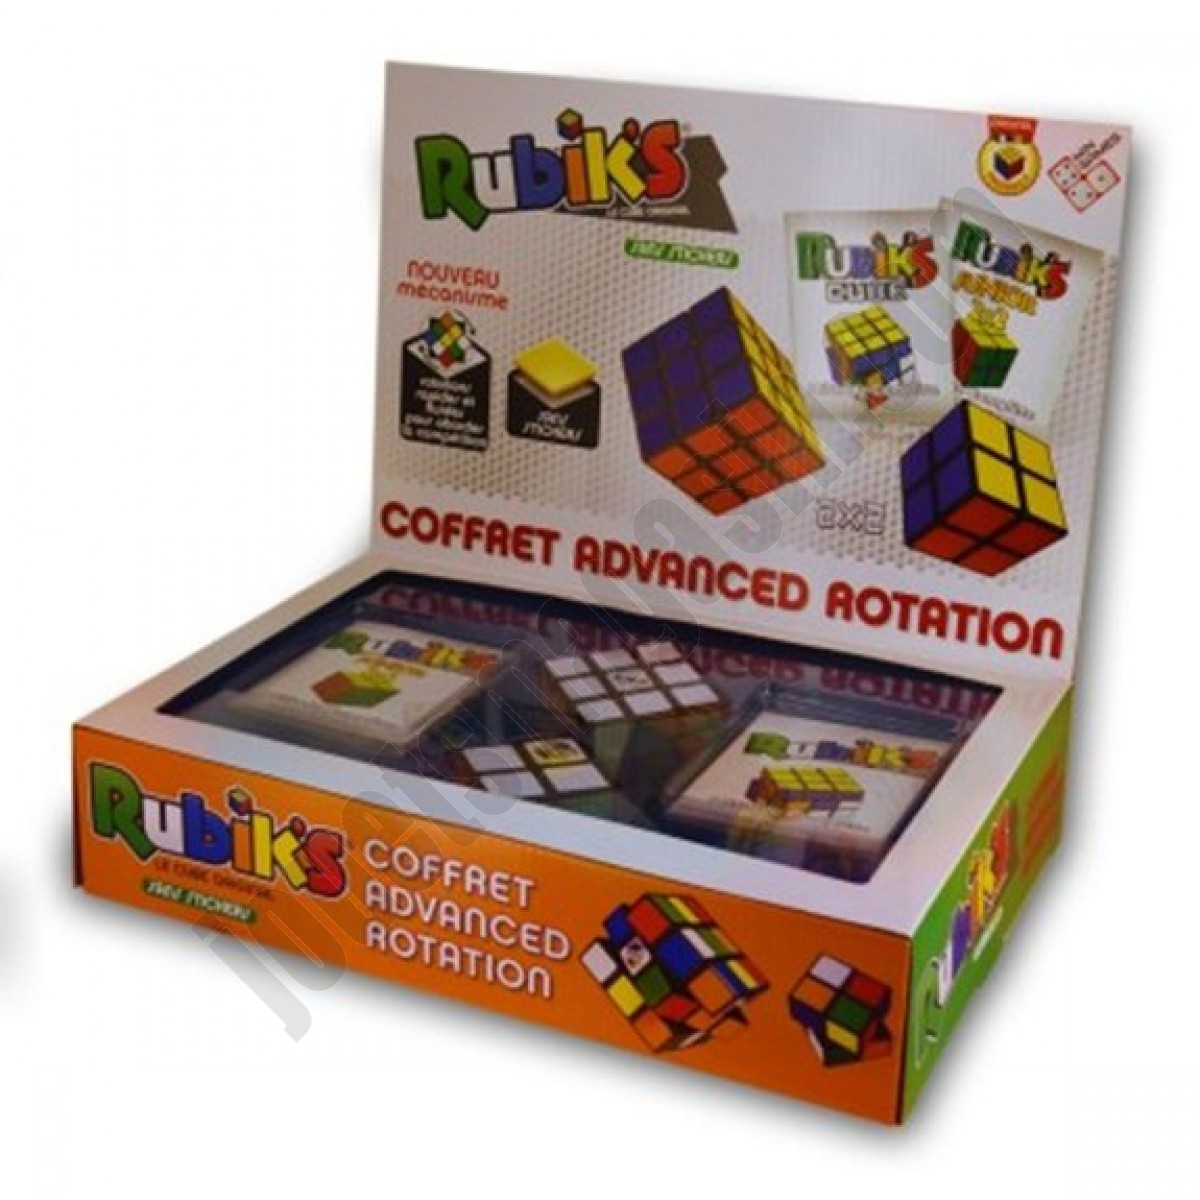 Rubik's cube coffret advanced rotation 3x3 et 2x2 ◆◆◆ Nouveau - Rubik's cube coffret advanced rotation 3x3 et 2x2 ◆◆◆ Nouveau